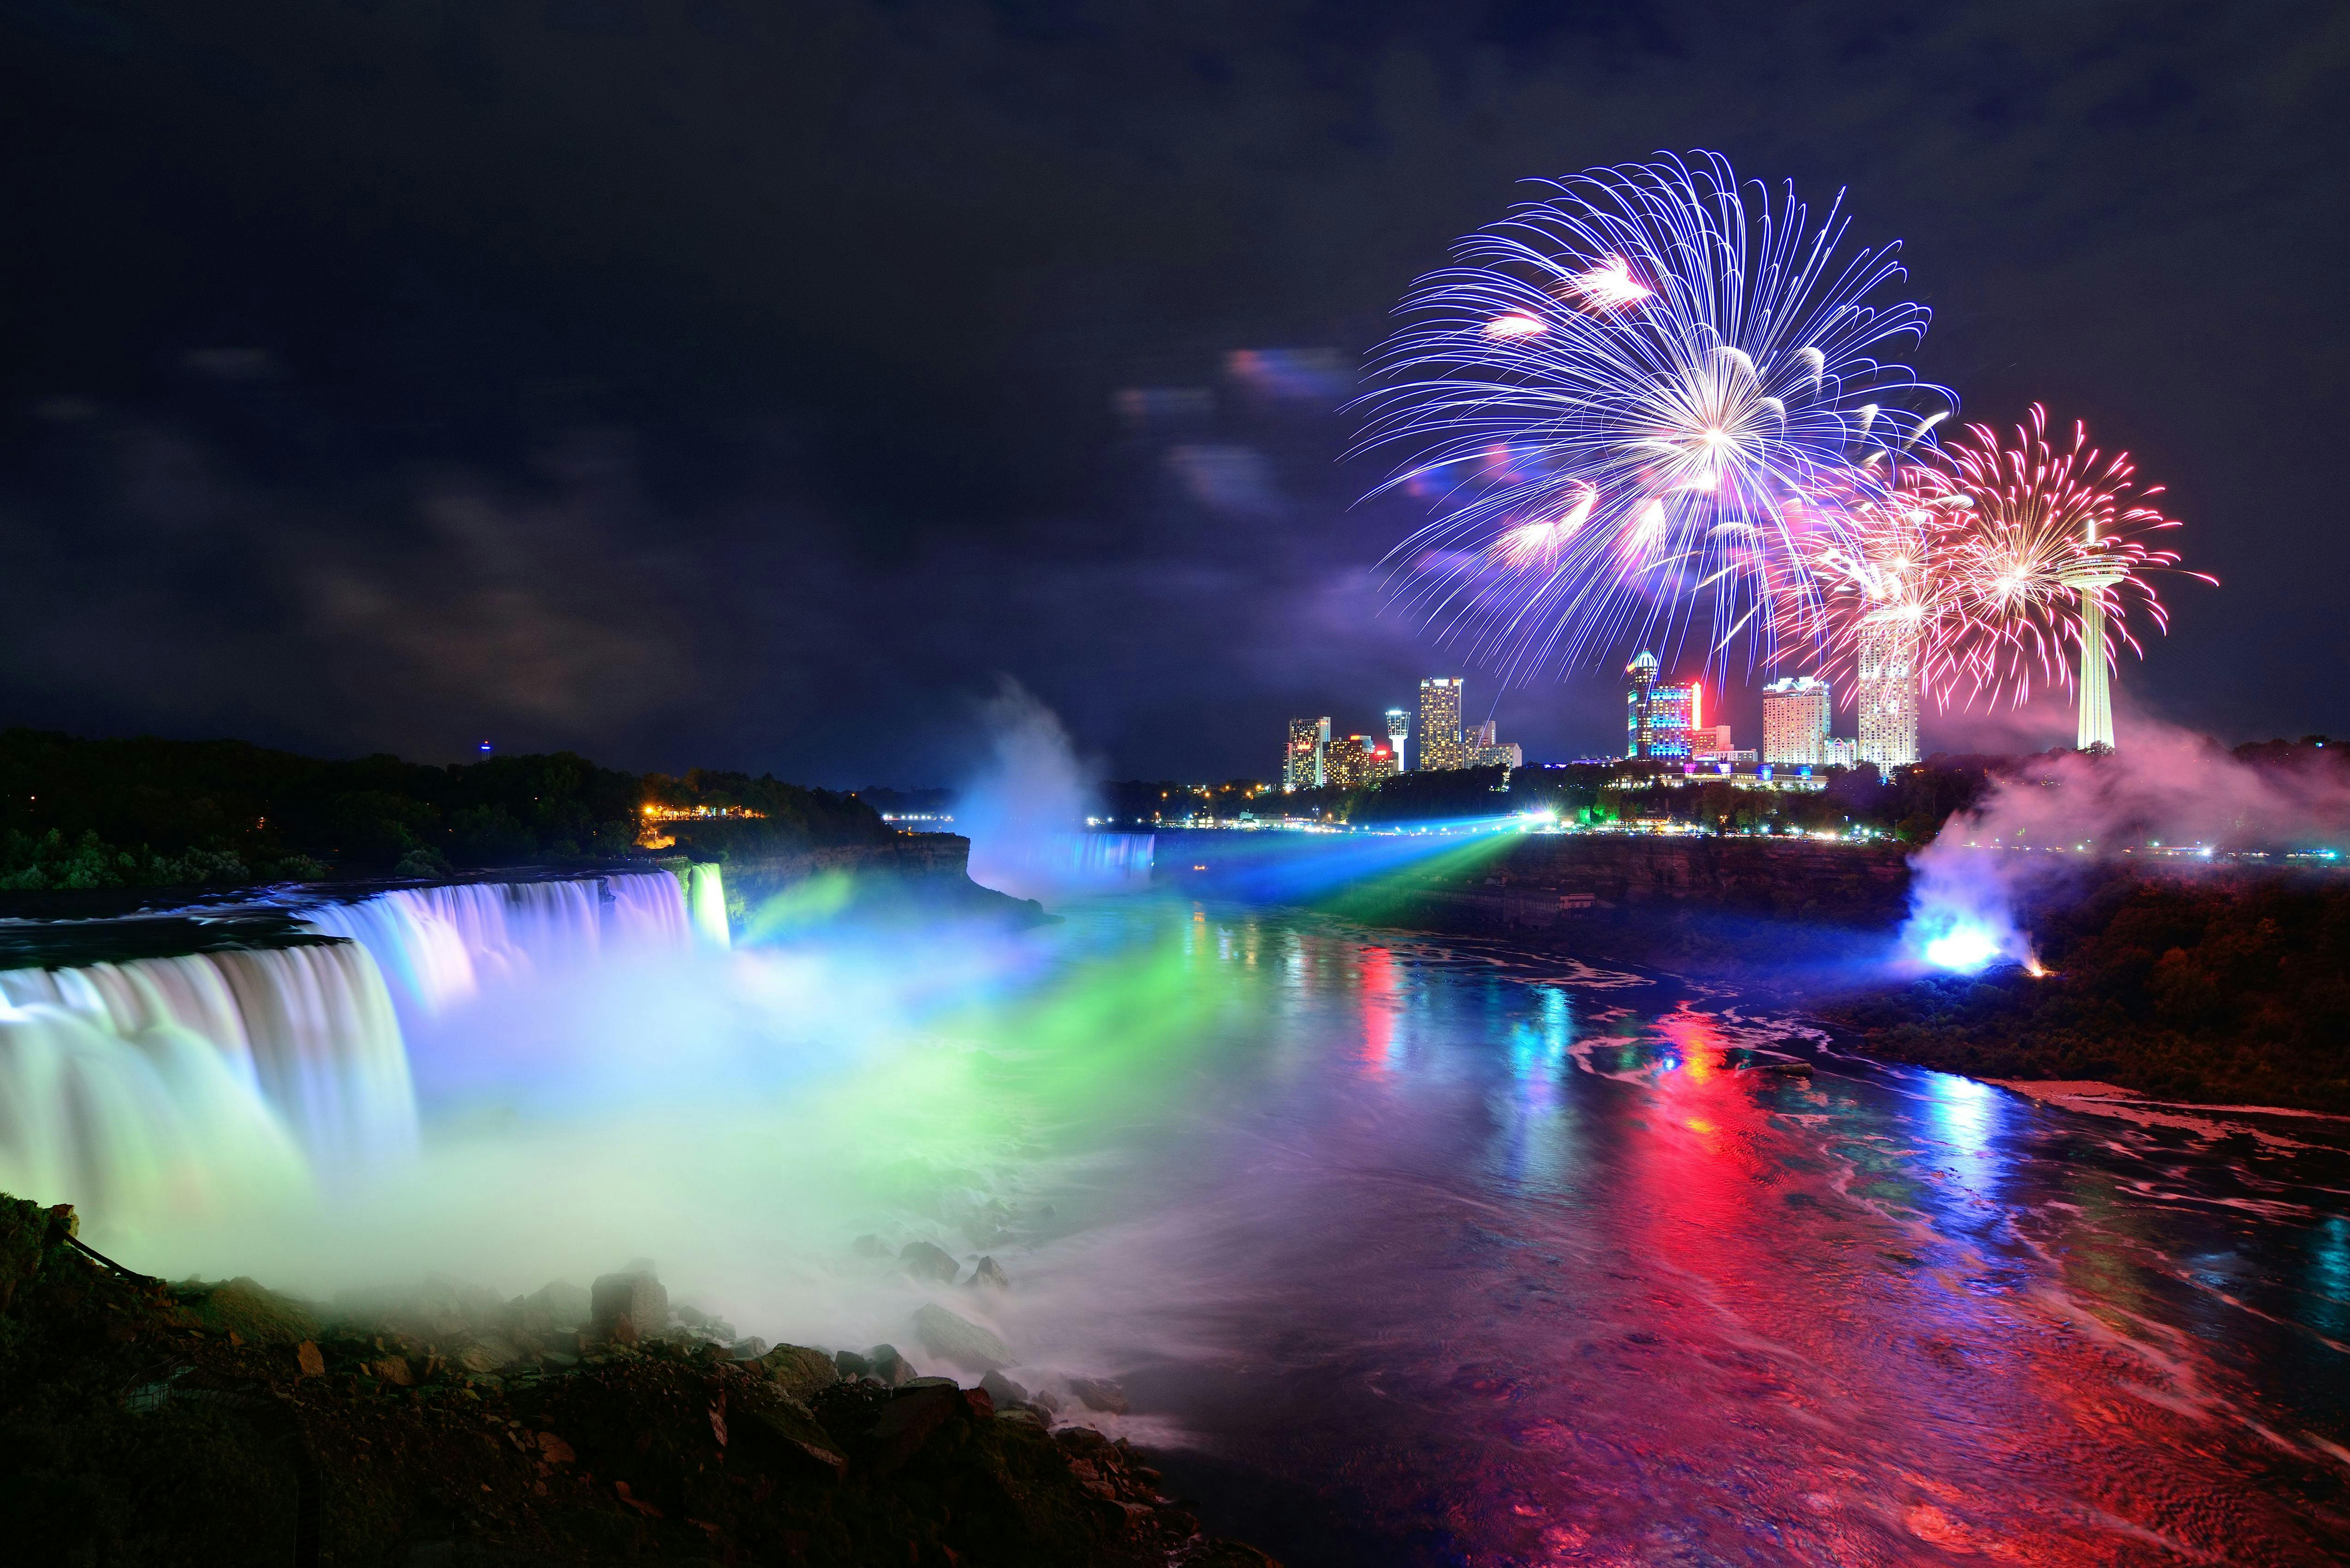 Visite combinée de jour et de nuit des chutes du Niagara aux États-Unis